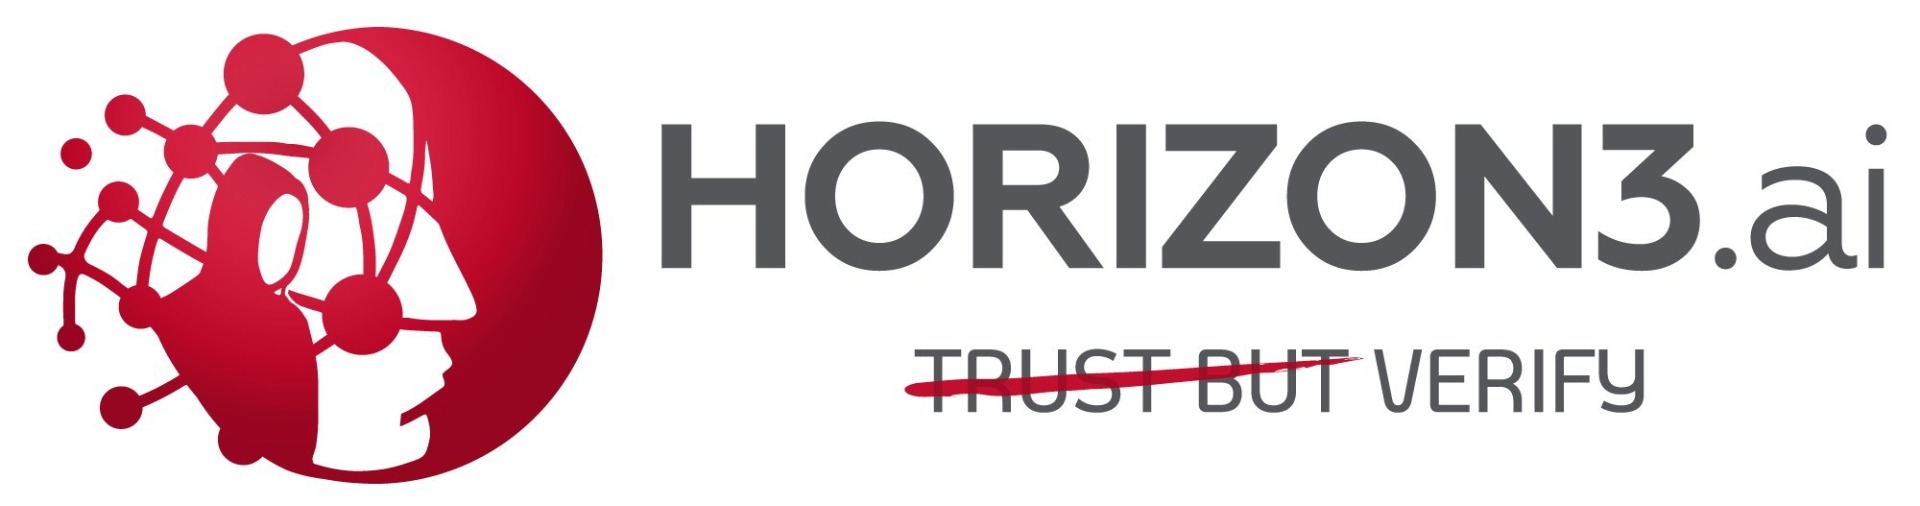 Partner logo for Horizon3